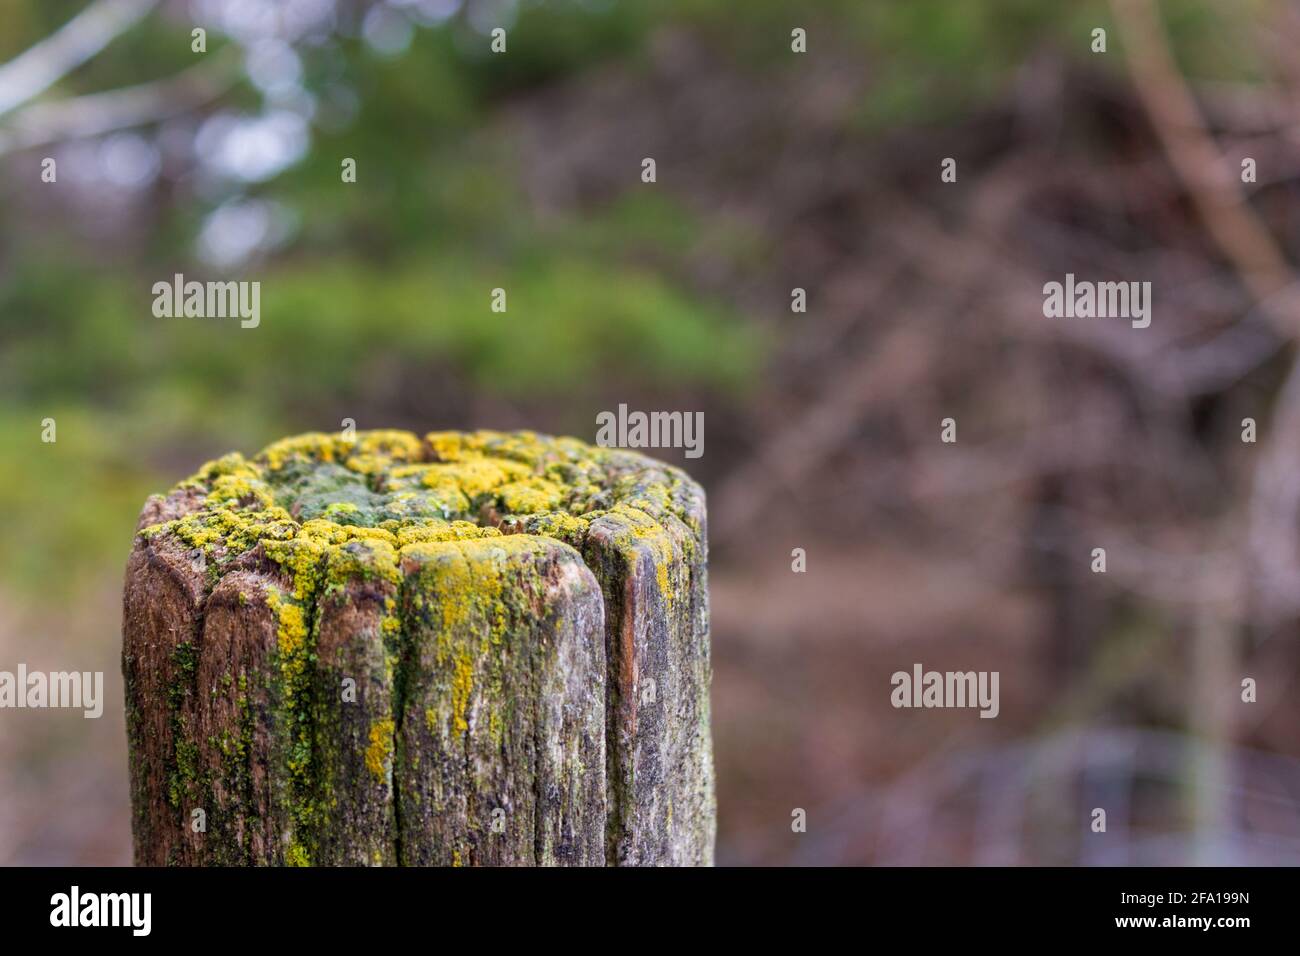 Le bord supérieur couvert de lichen d'un ancien poteau de clôture en bois se distingue sur fond de feuillage humide. Banque D'Images